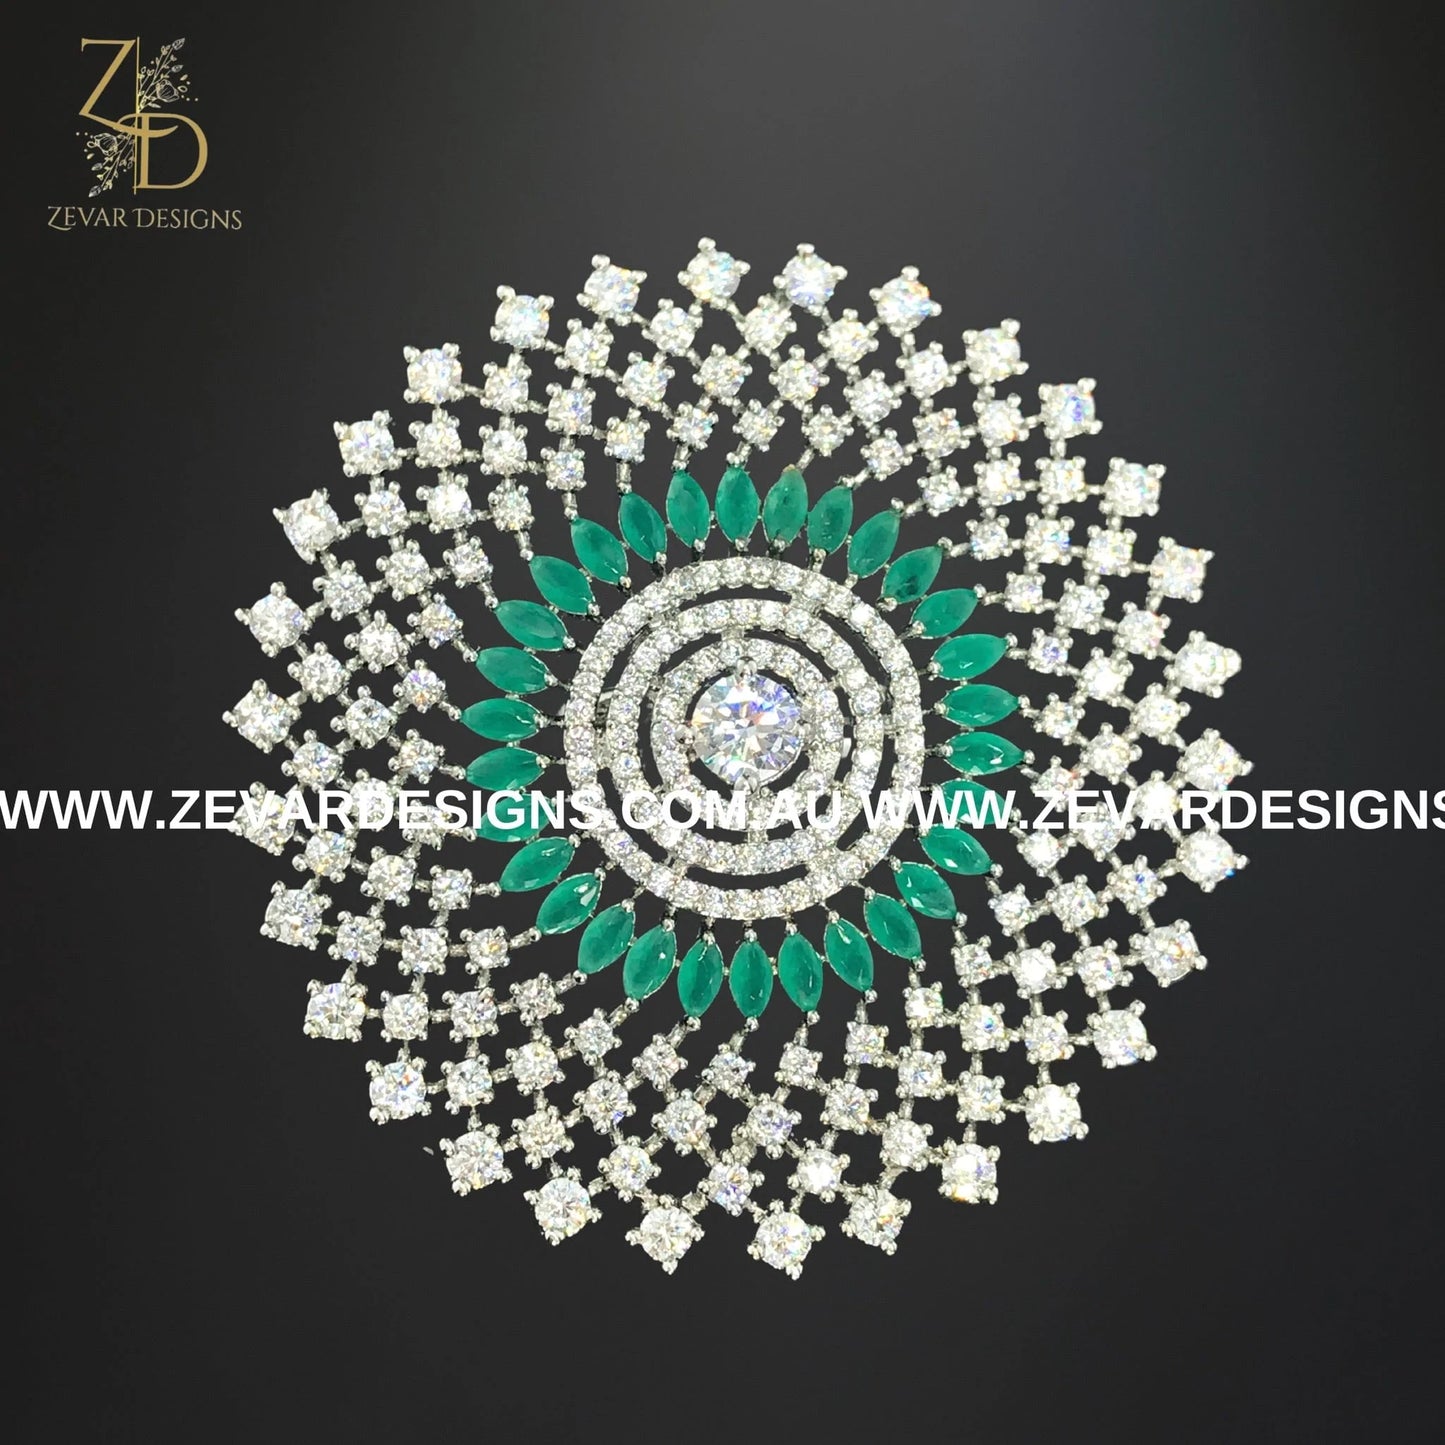 Zevar Designs Rings - AD AD/Zircon Ring - Green